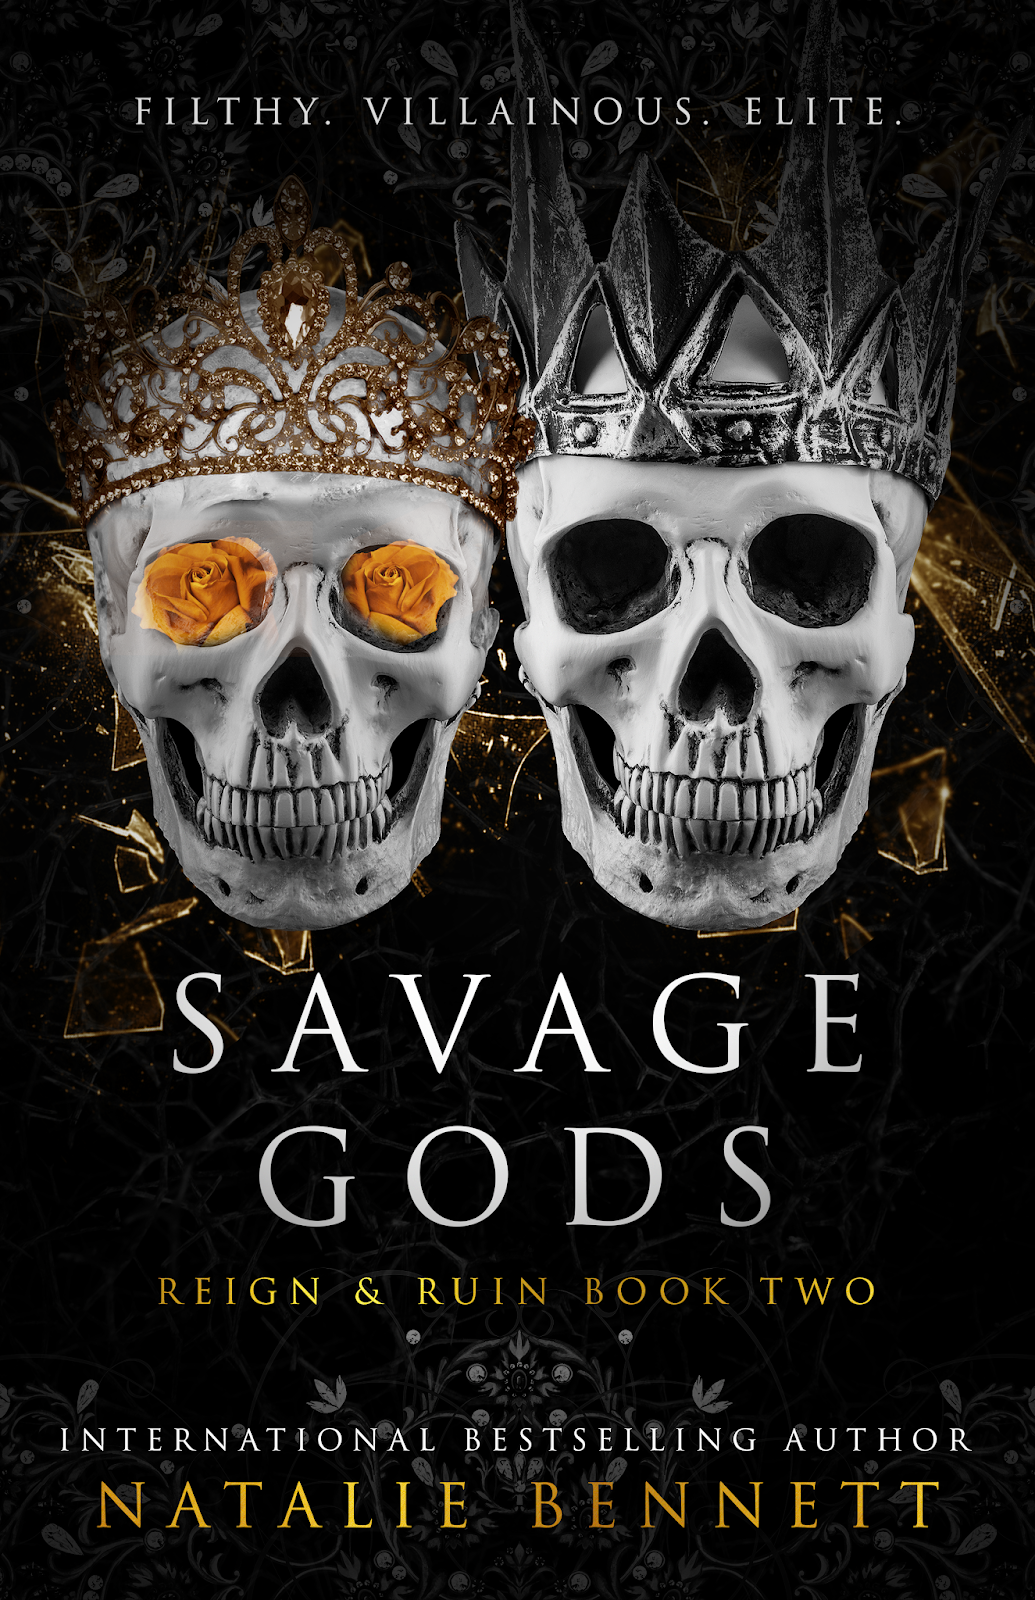 Savage Reign. Natalie Bennett Savages. Queen of Ruin книга.